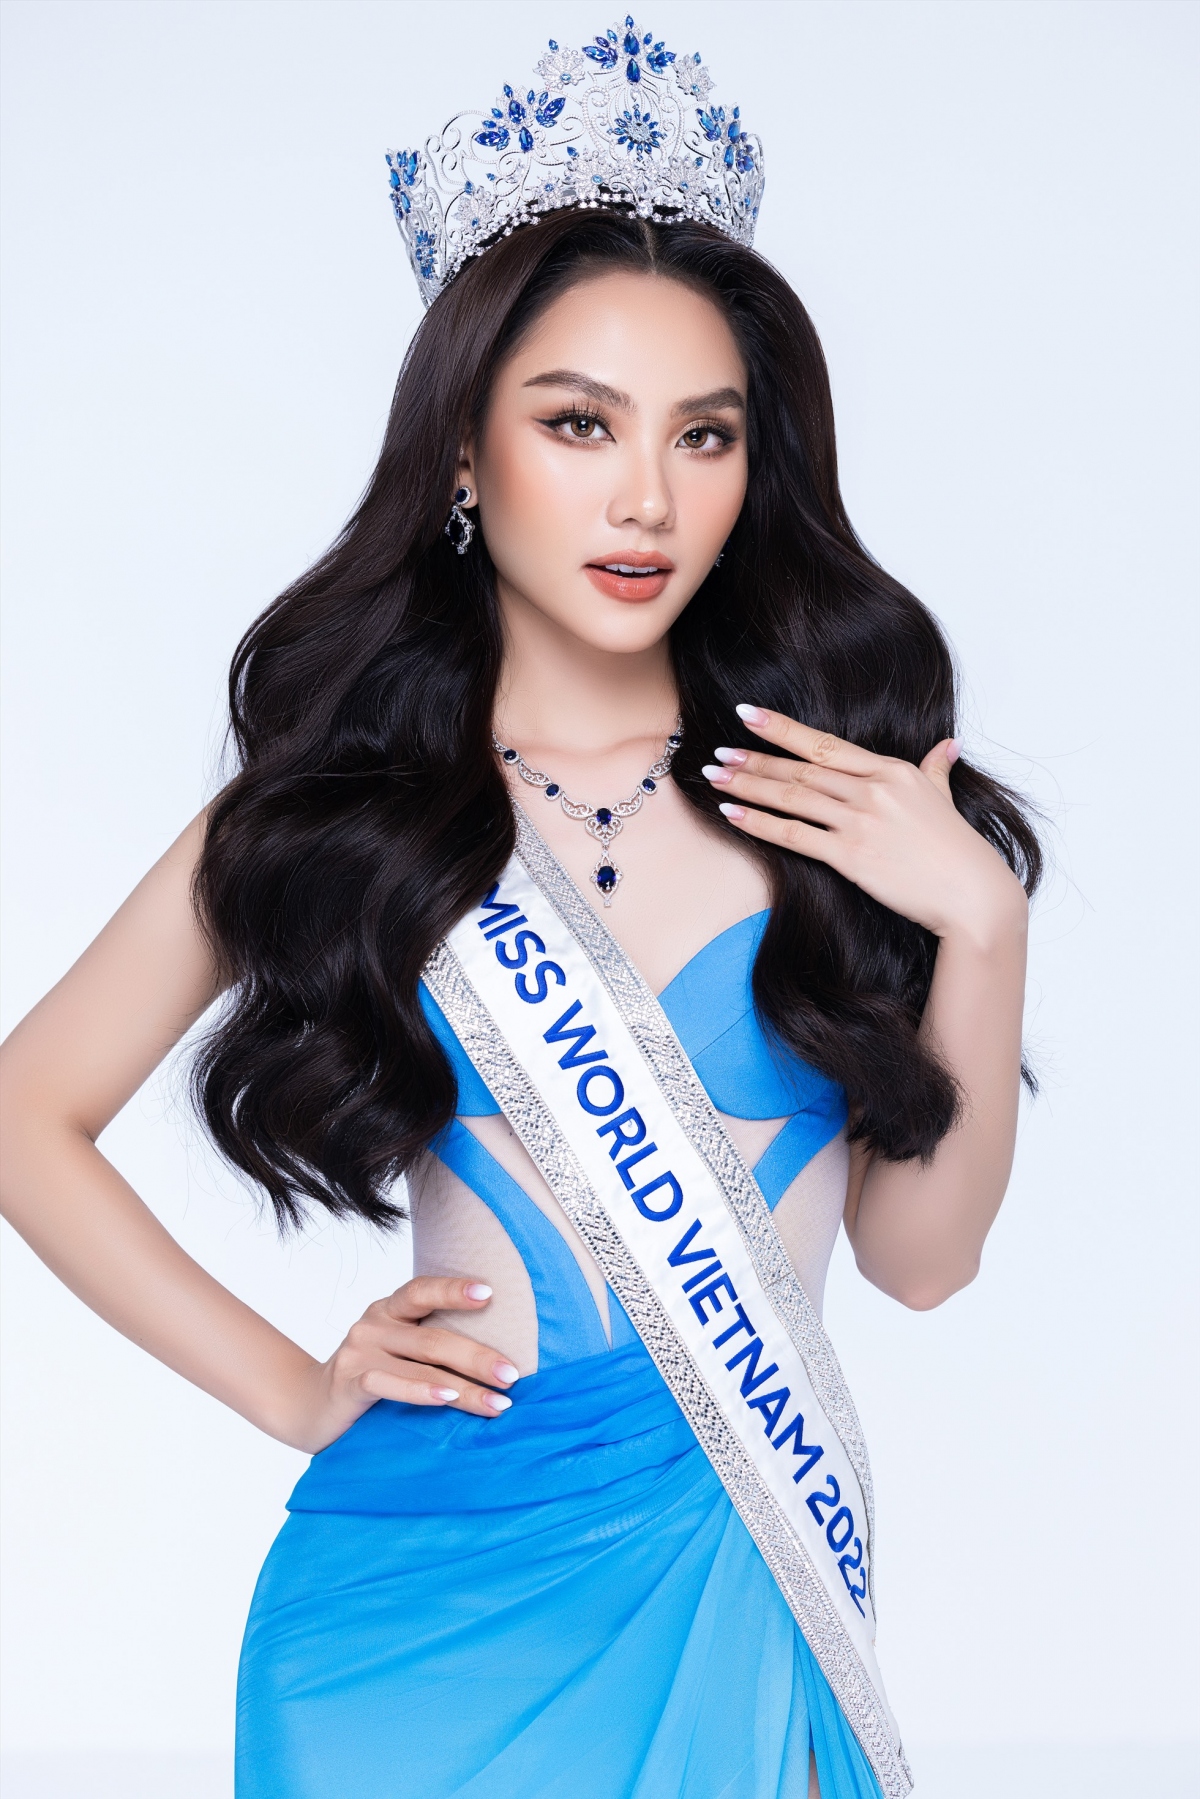 Hoa hậu Mai Phương chính thức có mặt trong Top 40 Miss World